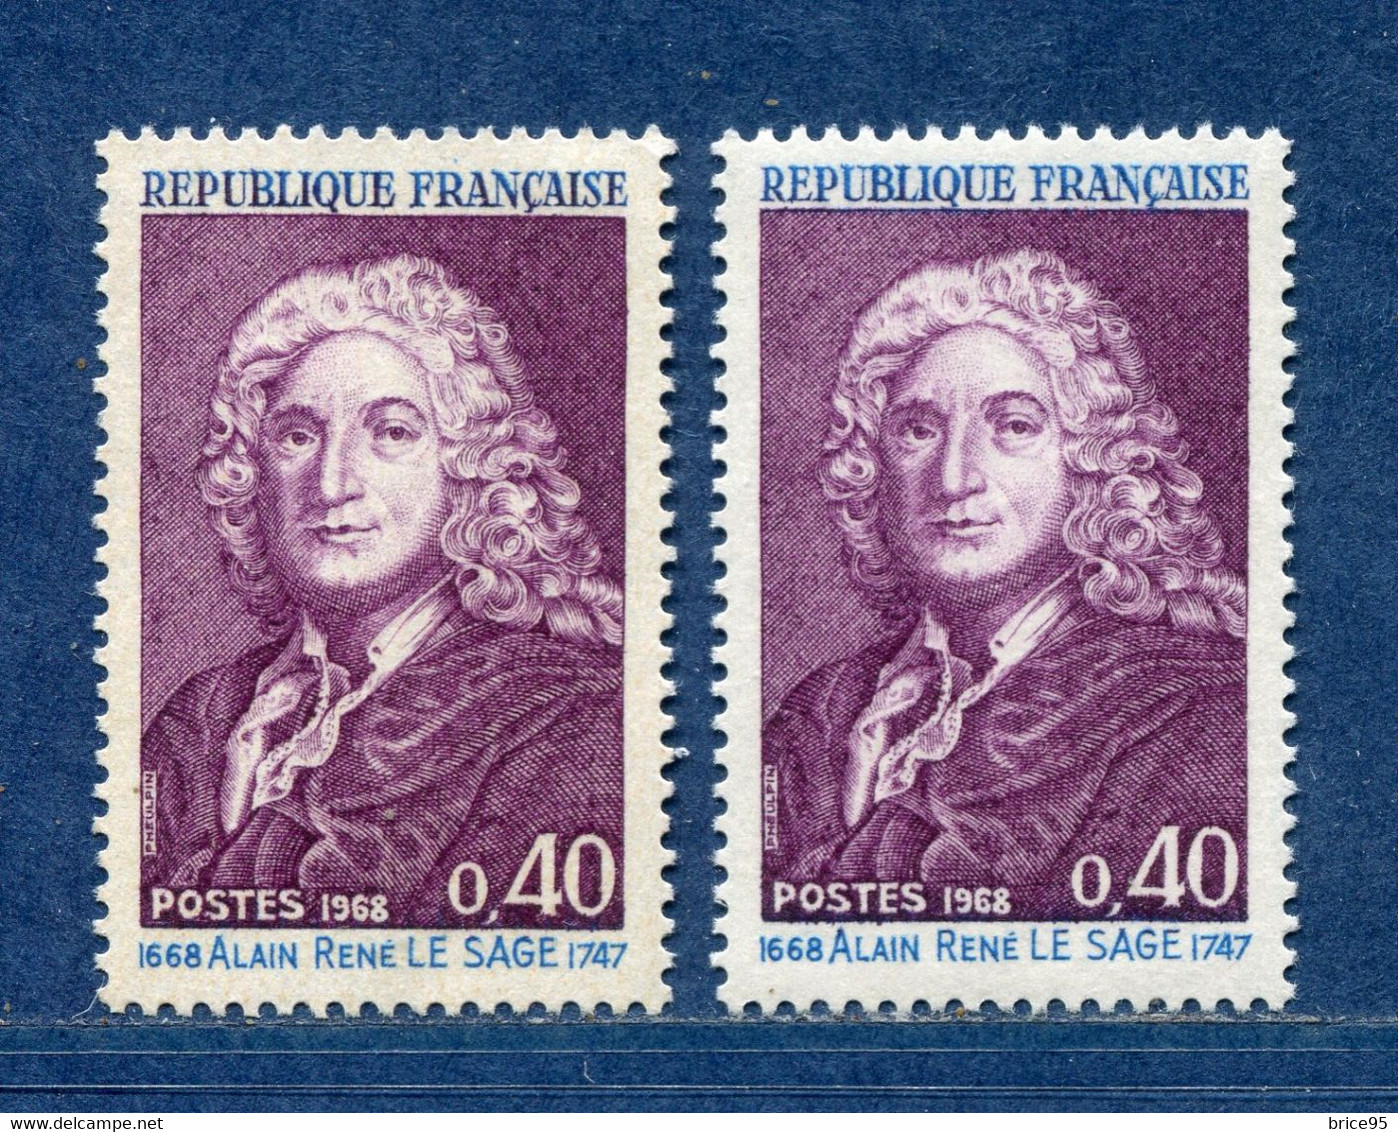 ⭐ France - Variété - YT N° 1558 - Couleurs - Pétouilles - Neuf Sans Charnière - 1968 ⭐ - Unused Stamps